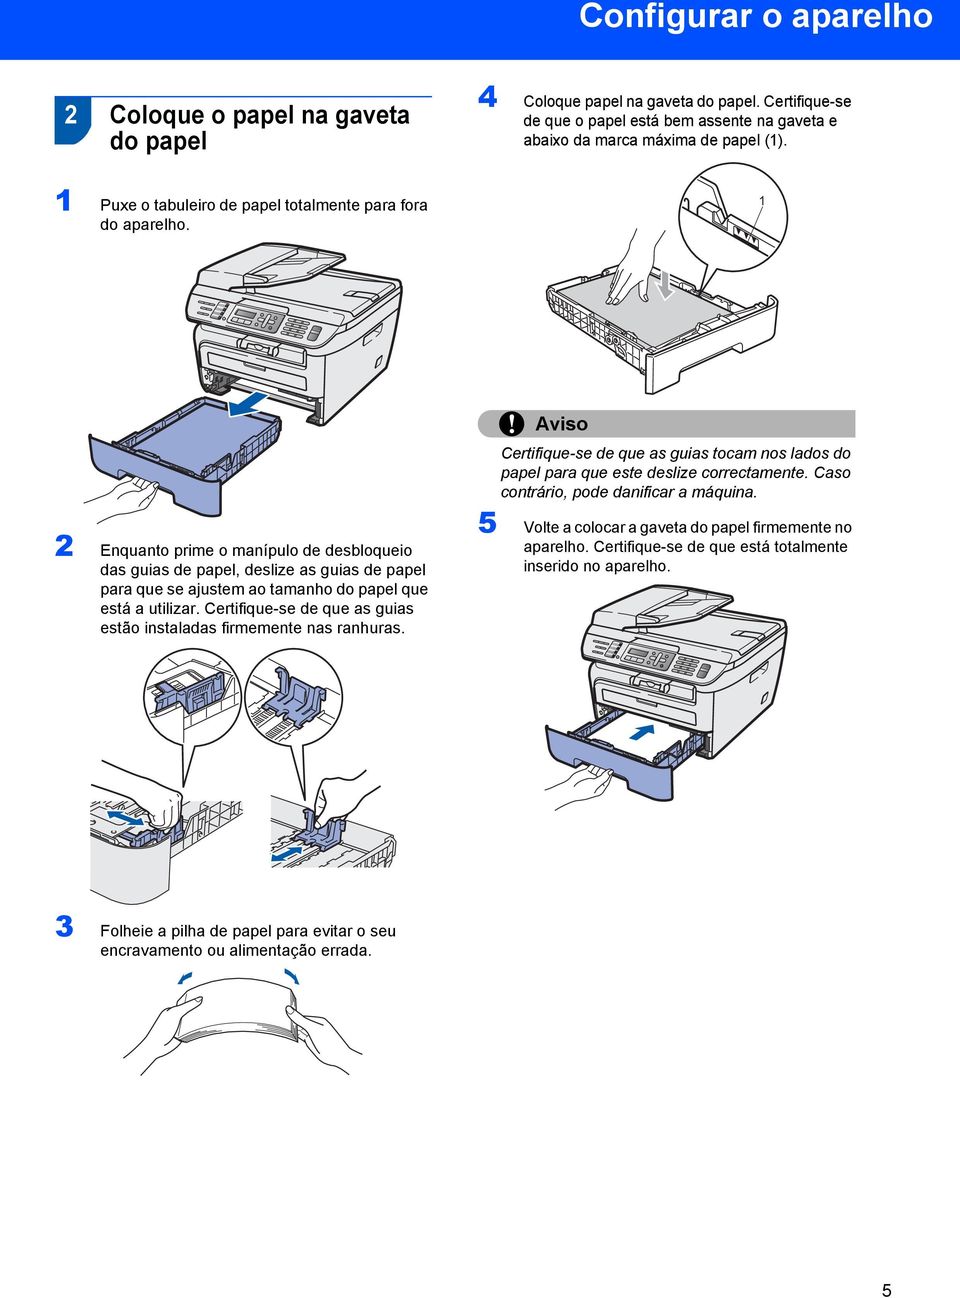 1 2 Enquanto prime o manípulo de desbloqueio das guias de papel, deslize as guias de papel para que se ajustem ao tamanho do papel que está a utilizar.